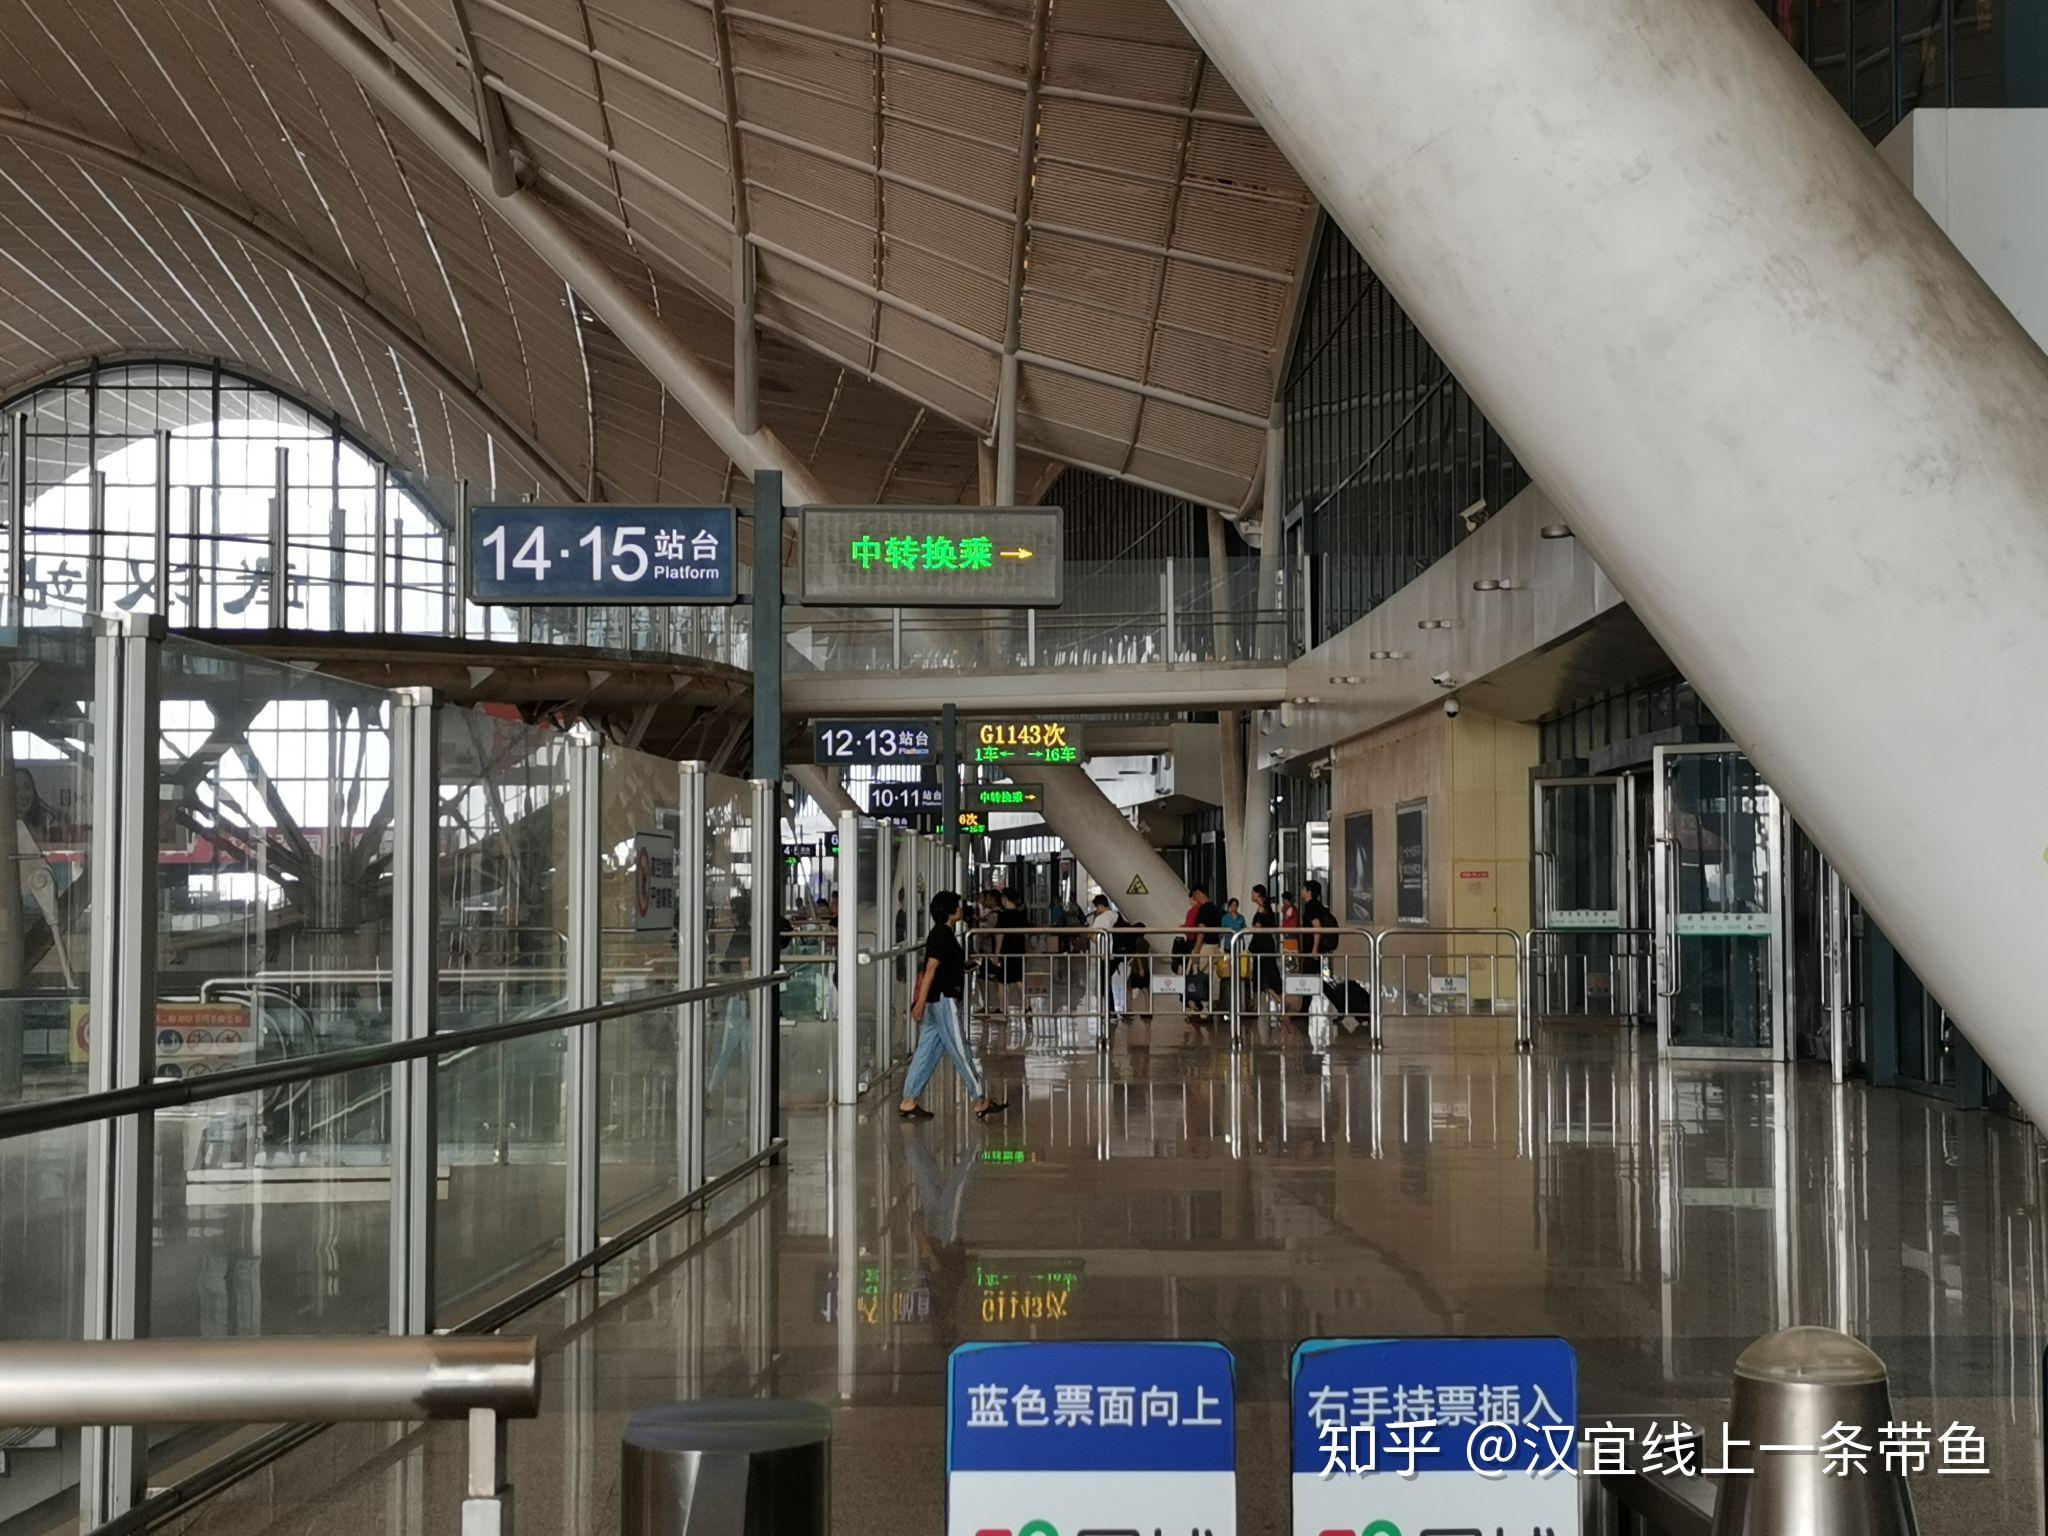 【携程攻略】汉口火车站门票,武汉汉口火车站攻略/地址/图片/门票价格